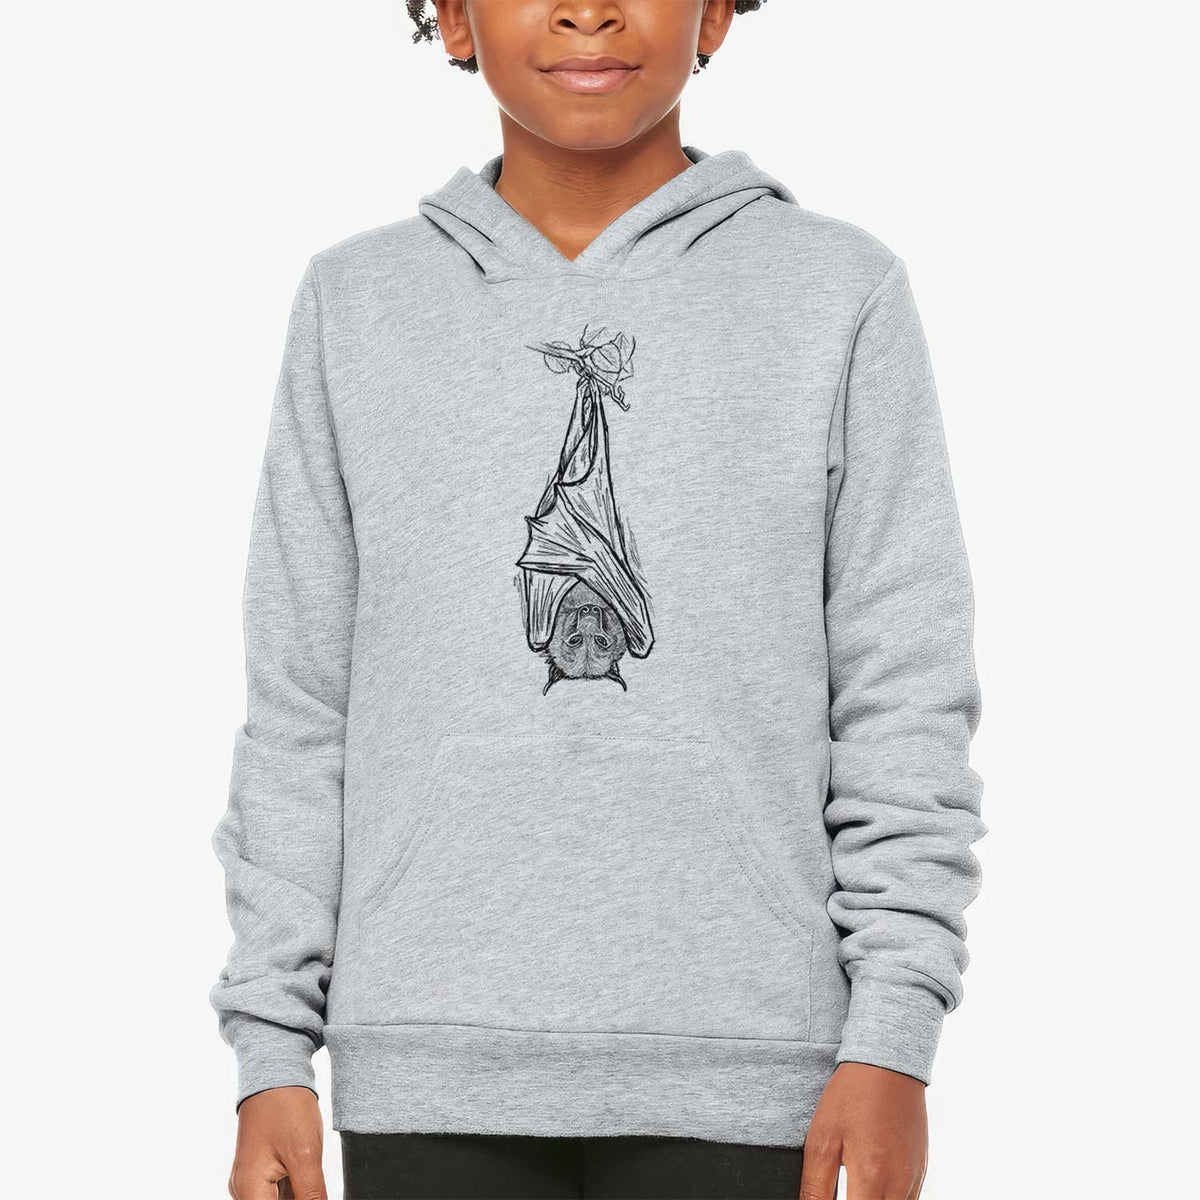 Pteropus vampyrus - Large Flying Fox - Youth Hoodie Sweatshirt